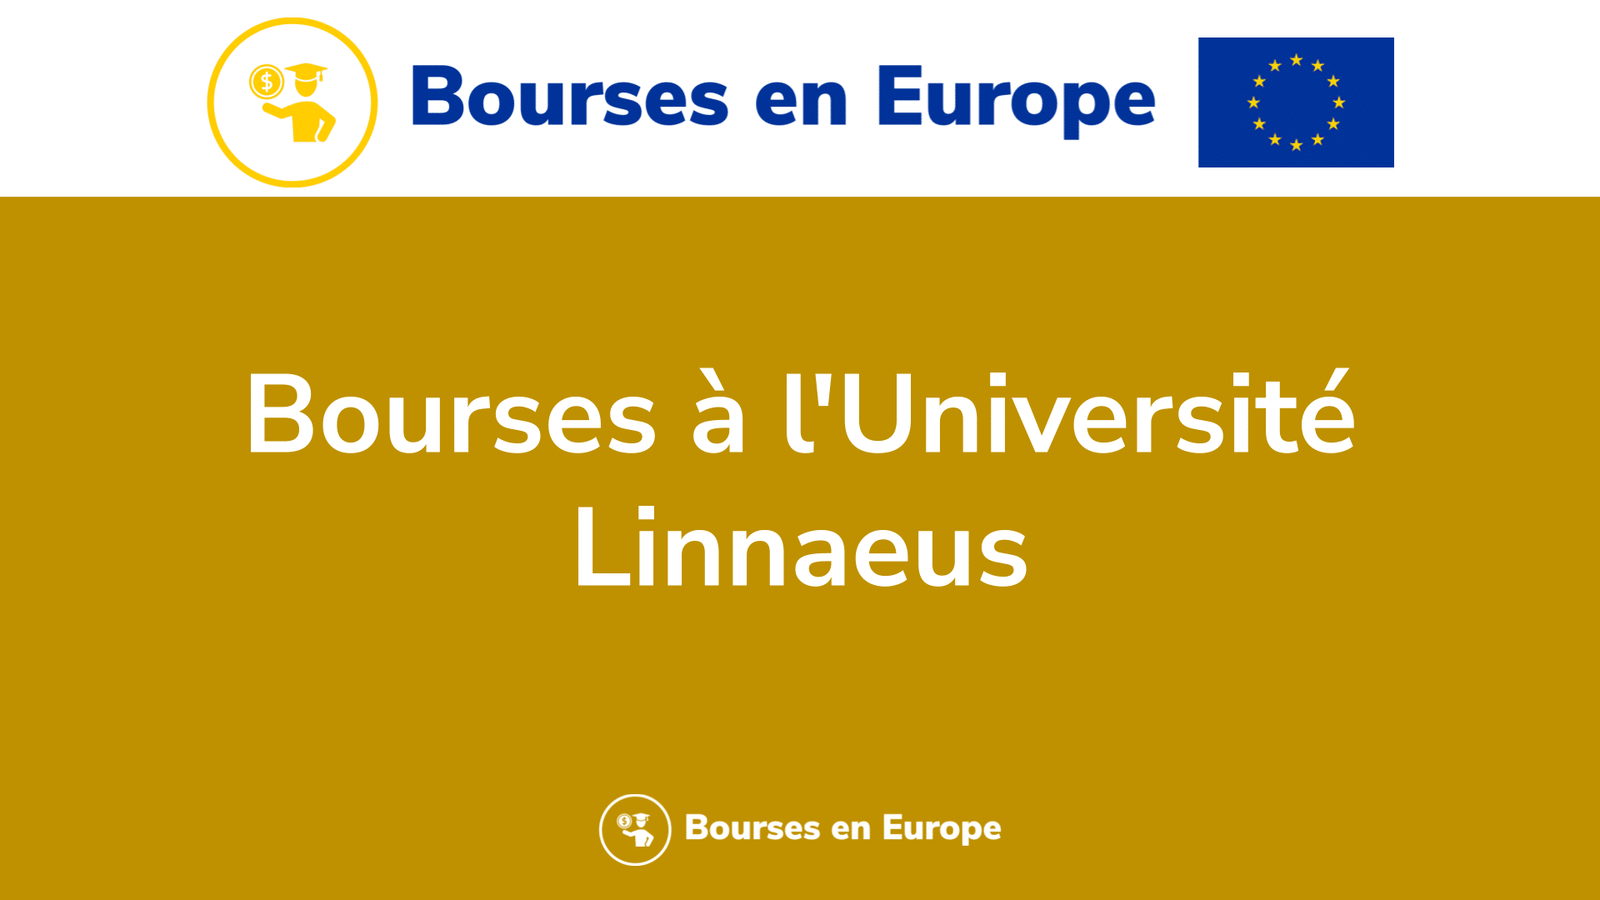 Bourses à l'Université Linnaeus